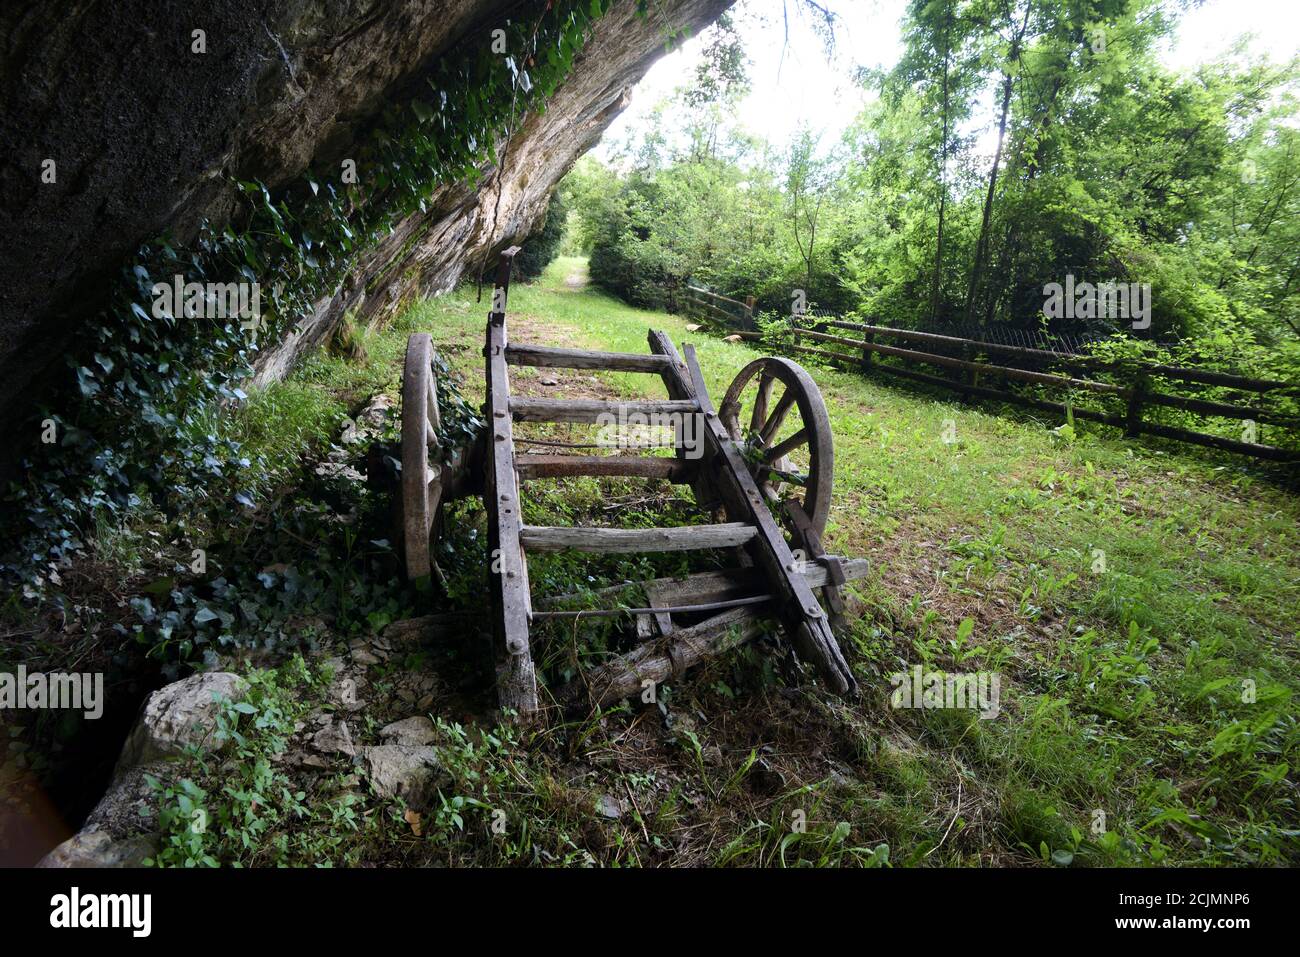 Verlassene alte Holzwagen oder Hay Cart unter Natursteinschutz Blieux Alpes-de-Haute-Provence Frankreich Stockfoto